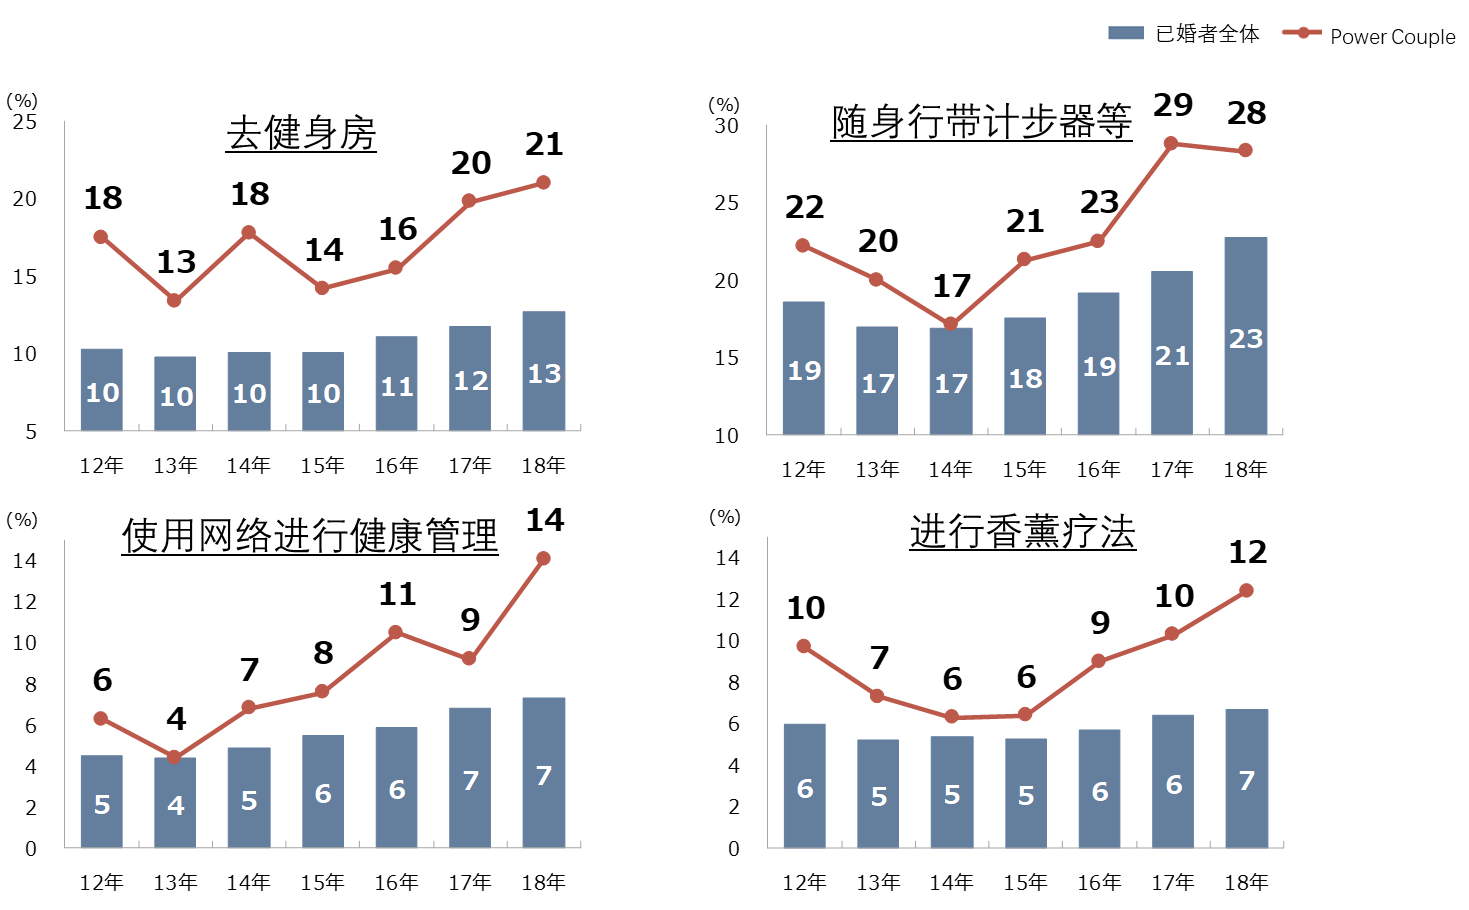 日本消费市场的牵引者 Power Couple